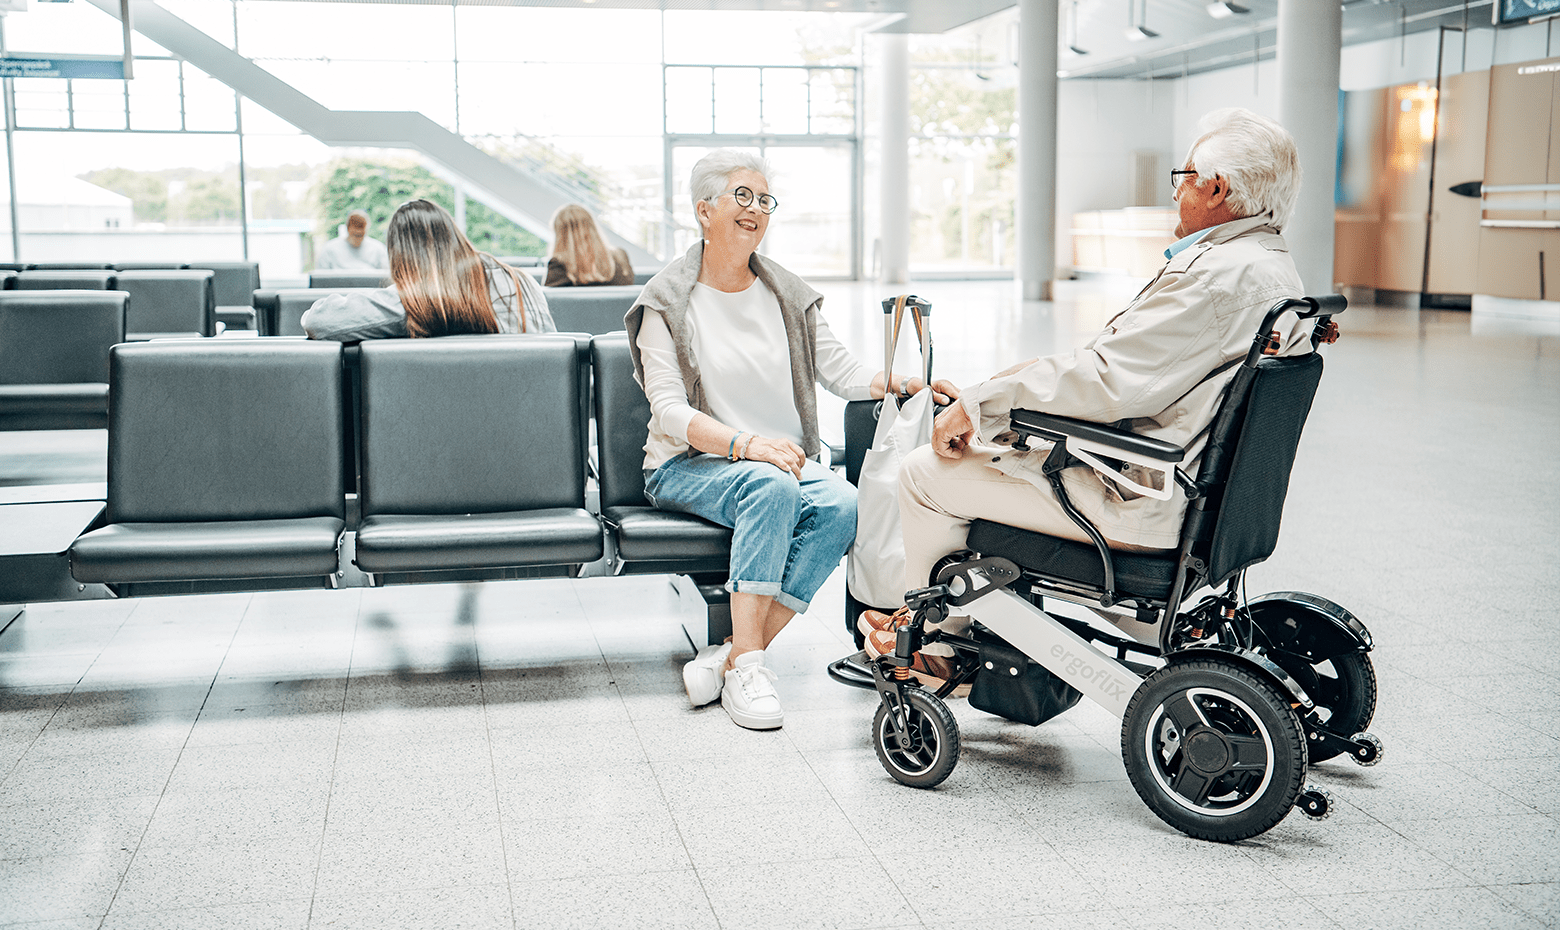 Dieses Bild zeigt einen Mann im faltbaren E-Rollstuhl ergoflix® LX am Flughafen, der mit seiner Frau spricht.